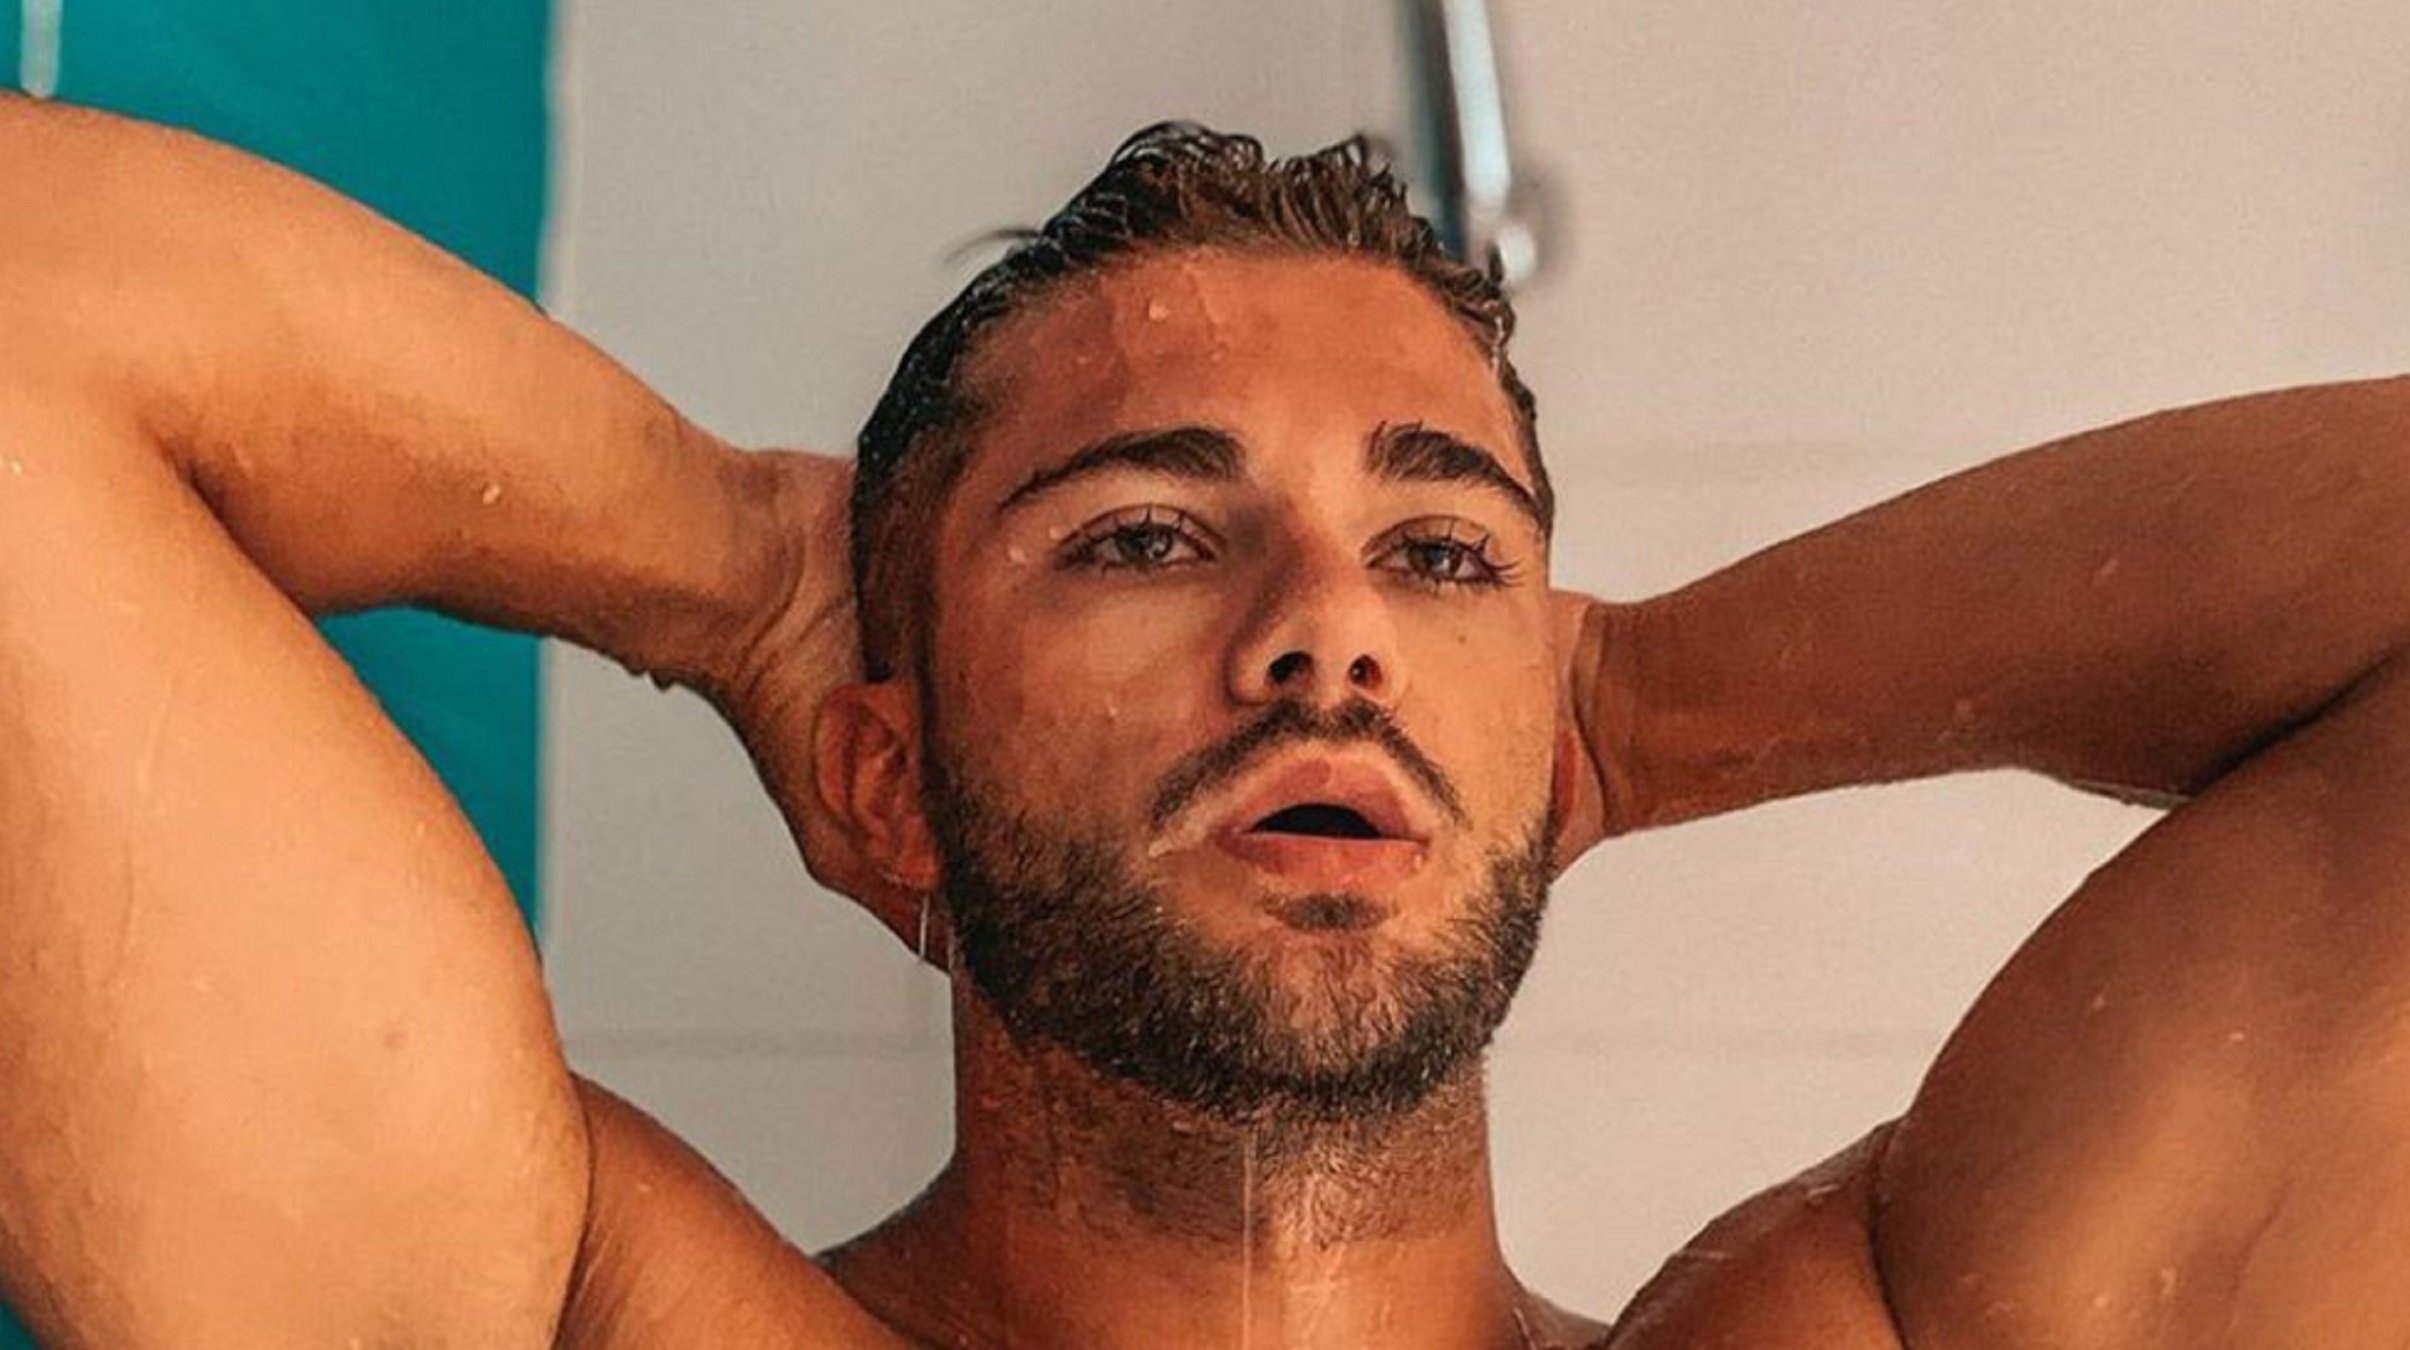 FOTOS EXPLOSIVAS Famoso de T5, desnudo en la ducha: "Culo veo, culo quiero"